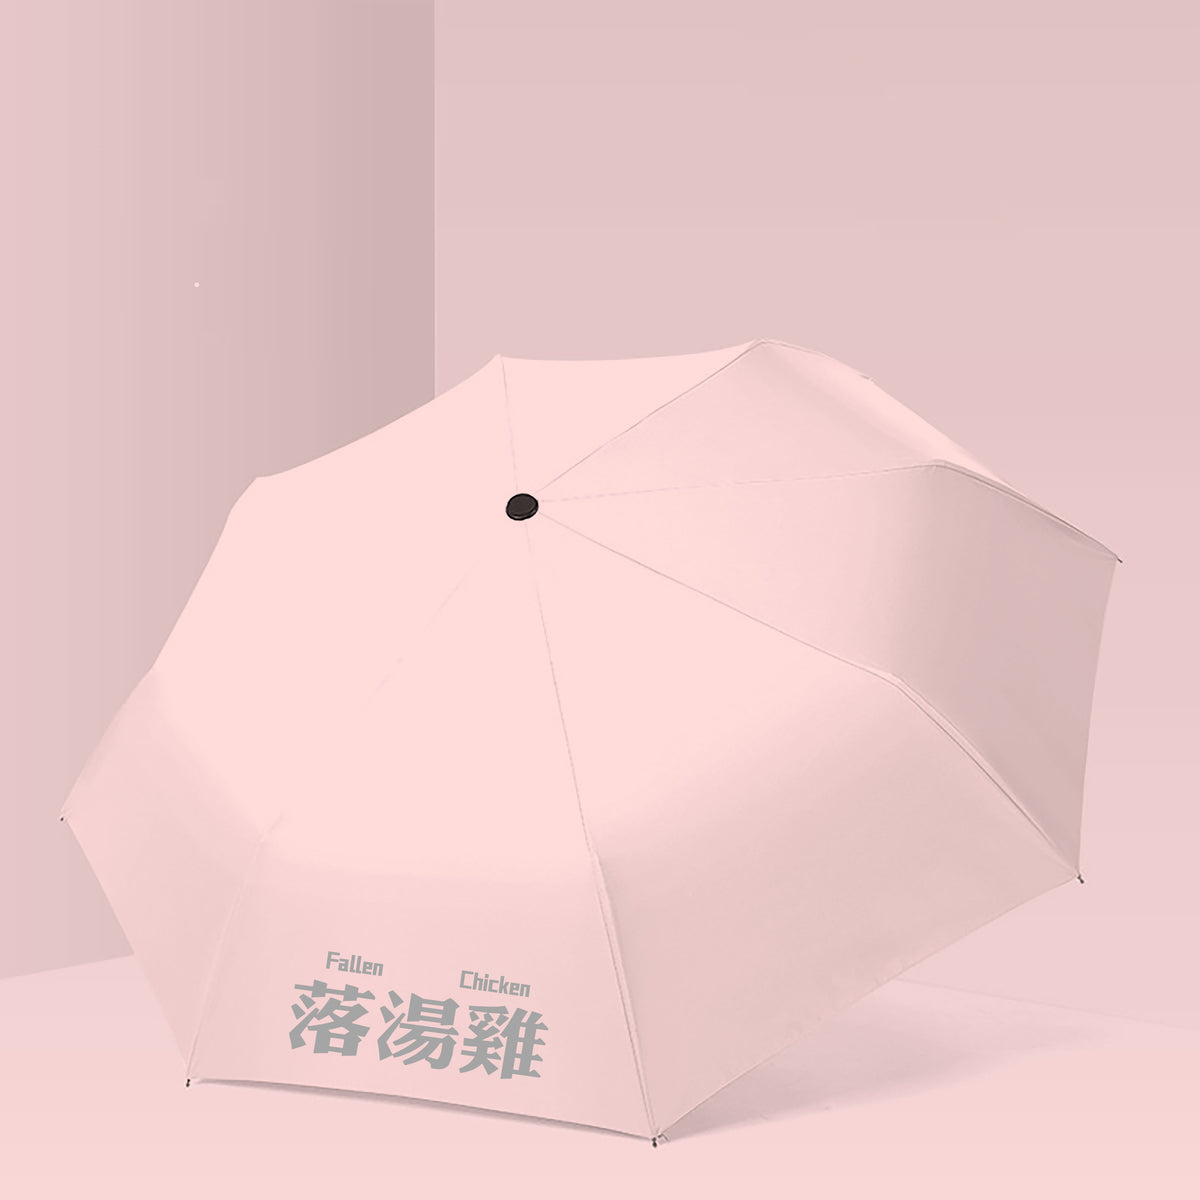 【我們都愛廣東話】落湯雞雨傘 廣東話晴雨傘  雨傘禮物定制